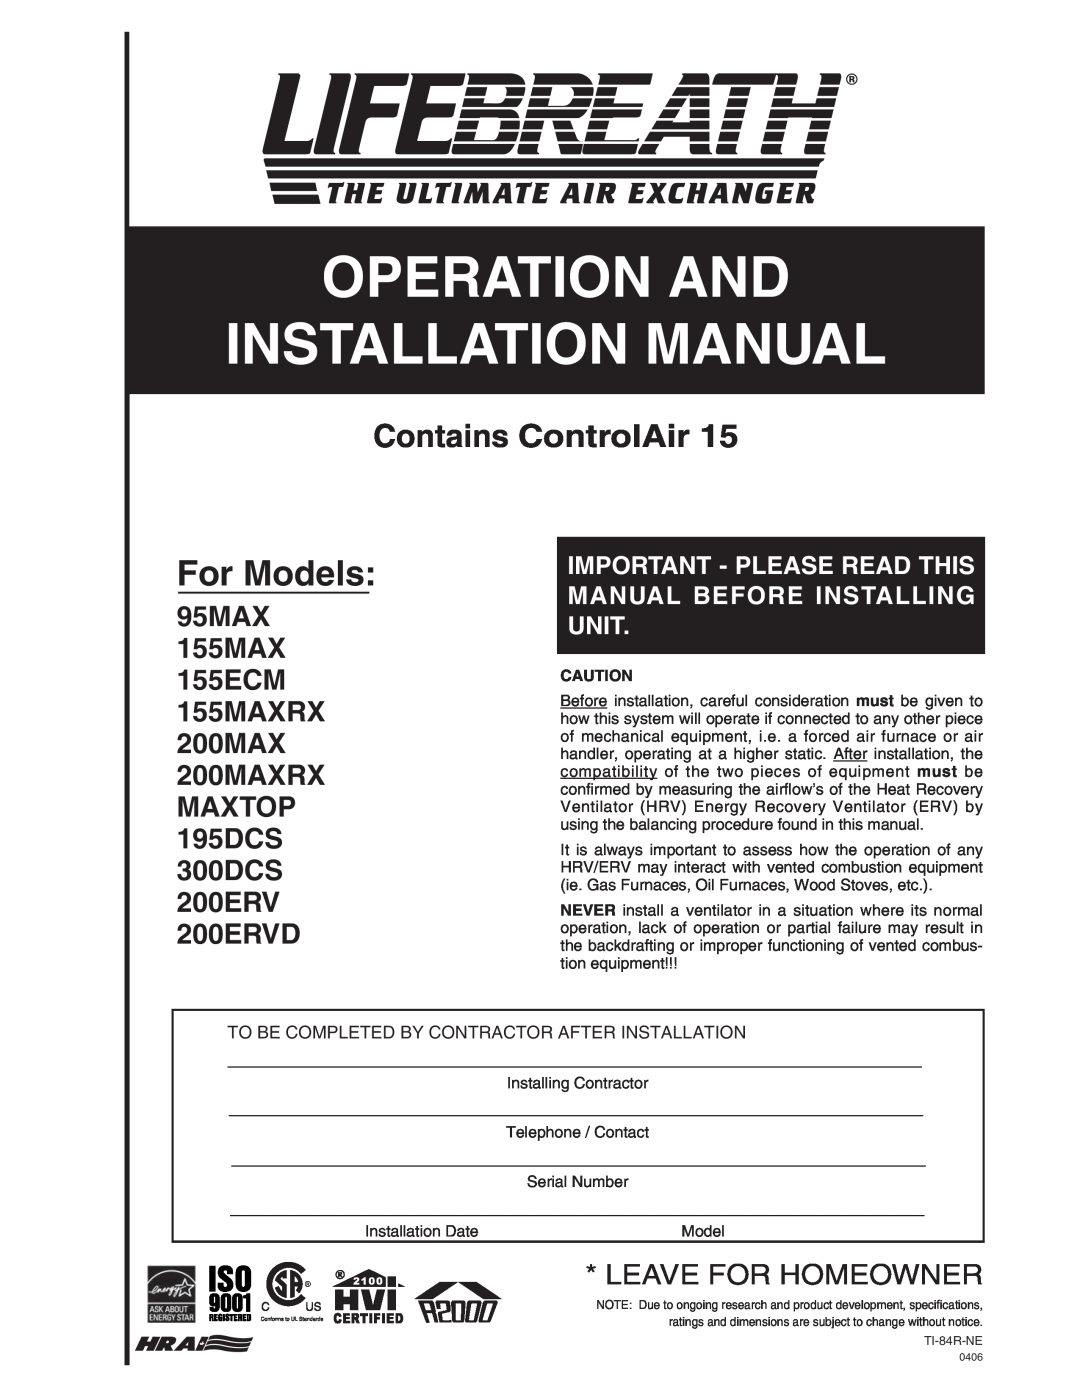 Lifebreath installation manual 95MAX 155MAX 155ECM 155MAXRX 200MAX 200MAXRX, MAXTOP 195DCS 300DCS 200ERV 200ERVD 